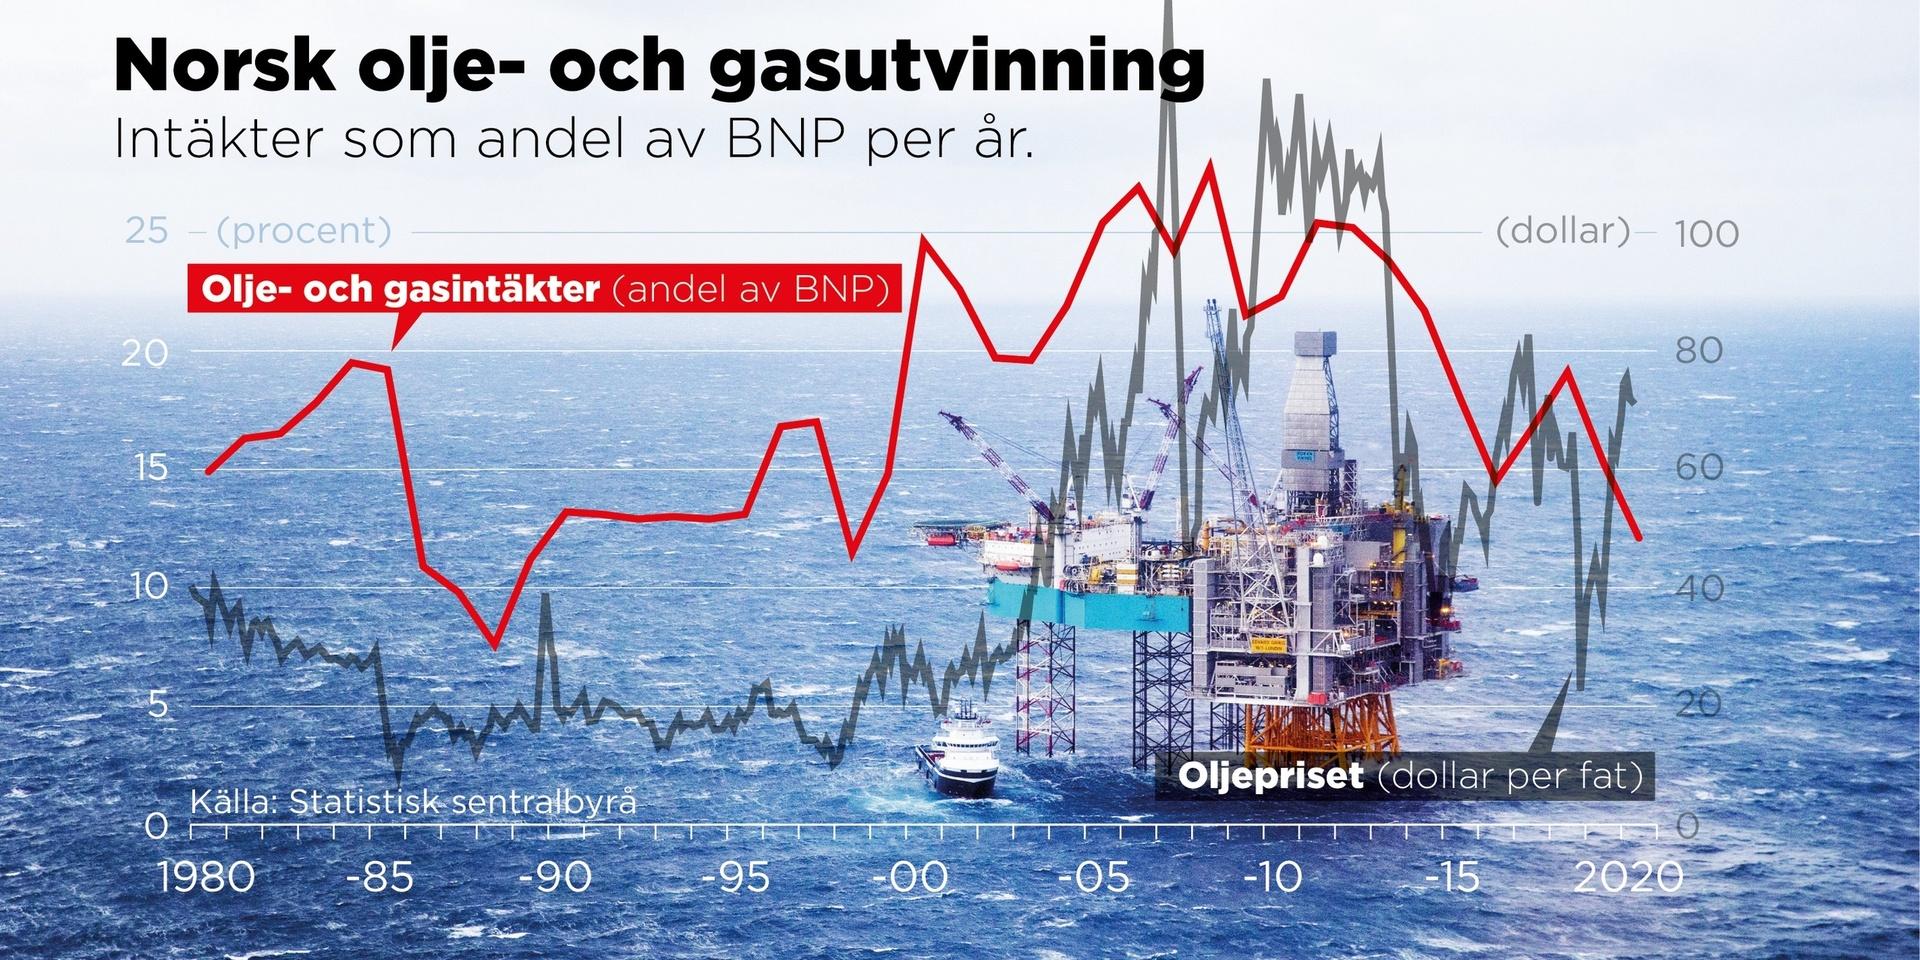 Intäkter från norsk olje- och gasutvinning som andel av BNP per år, 1980–2020